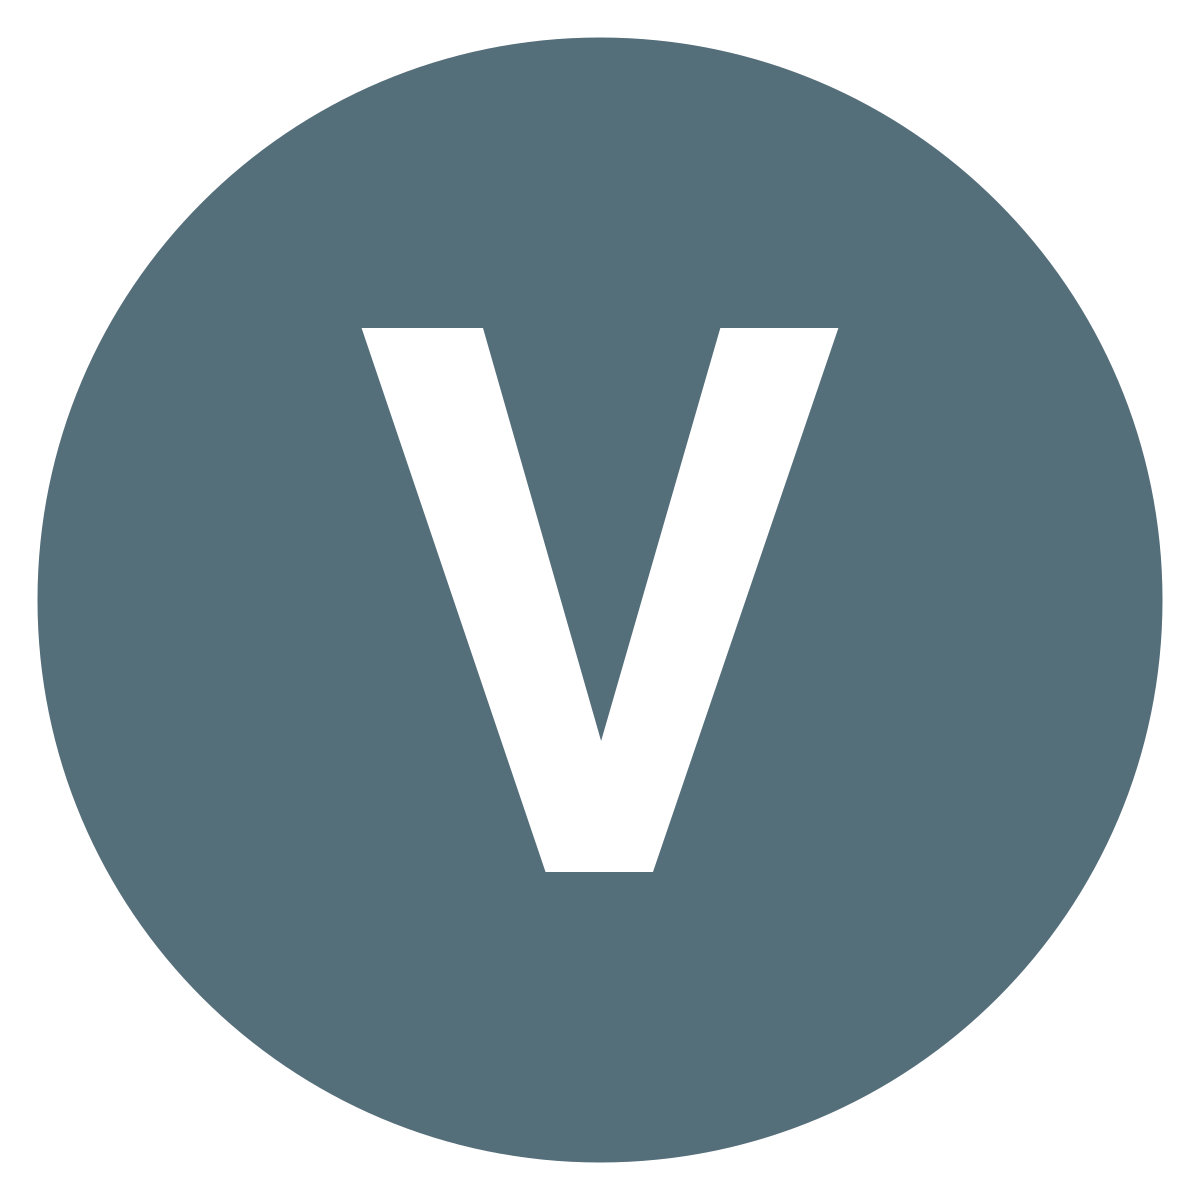 Blue V Logo PNG Image Background